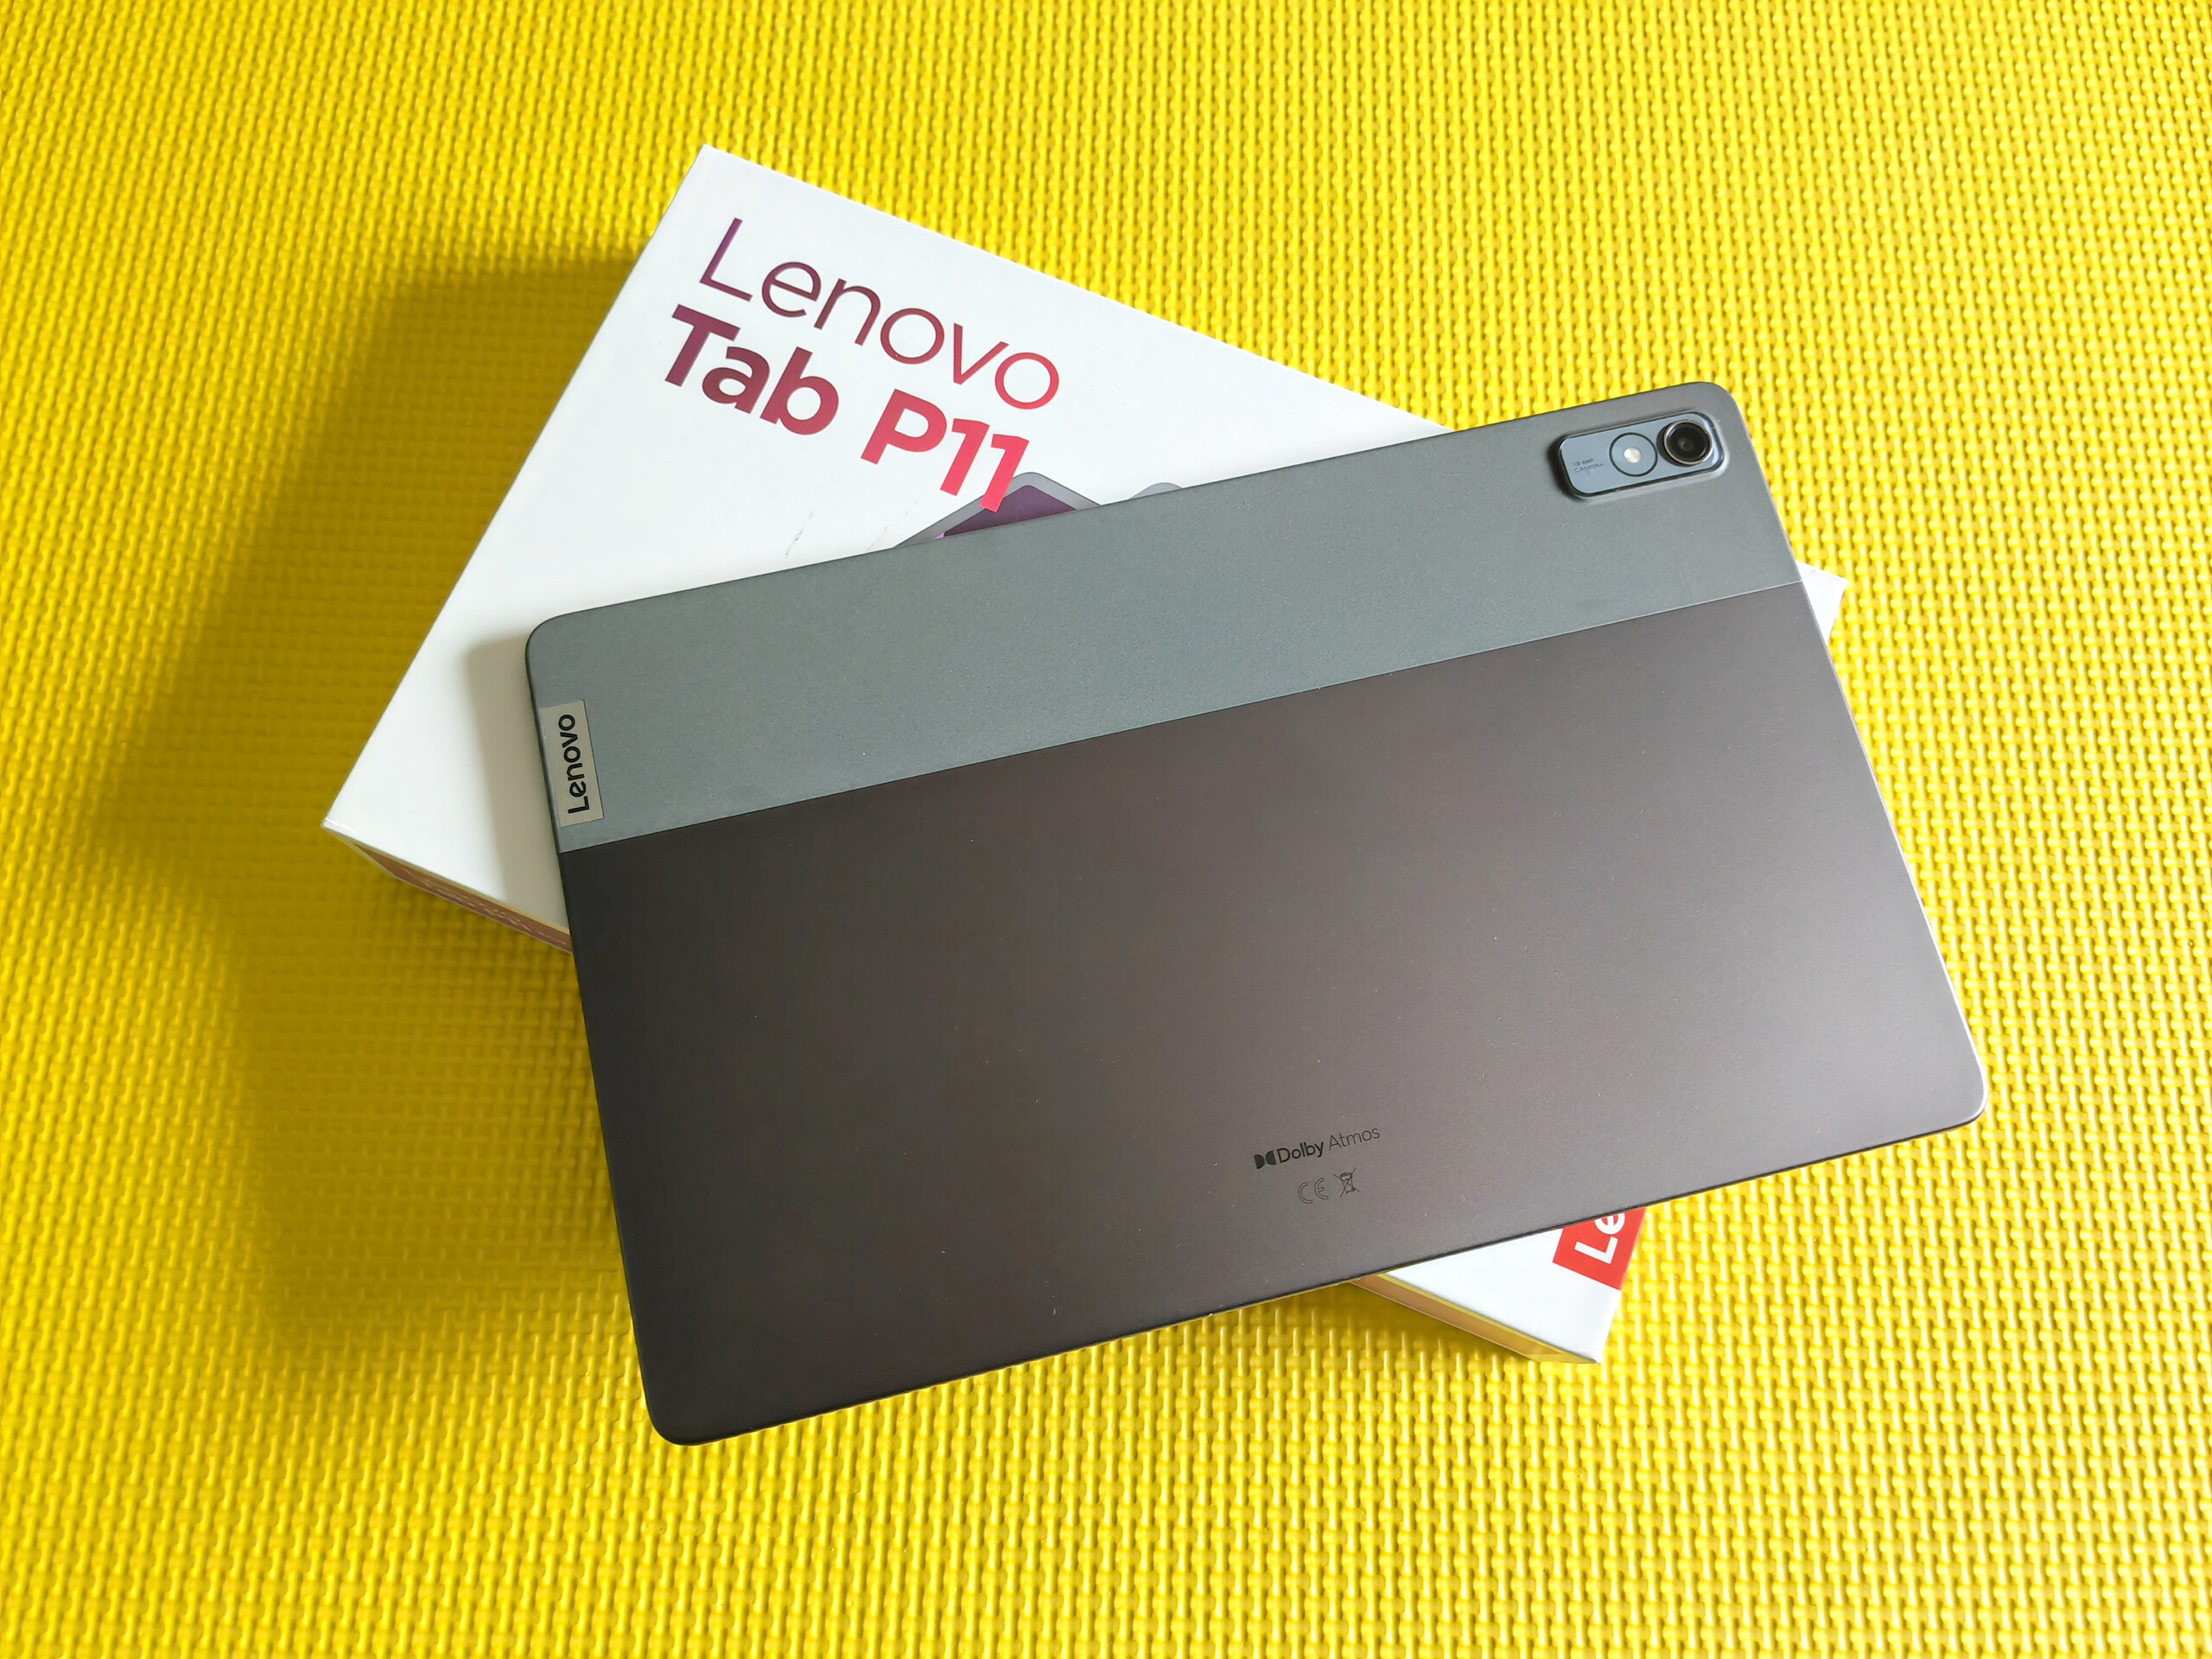 Tablet Lenovo Tab P11 MediaTek Helio G99 128gb + Teclado y Lapiz LENOVO